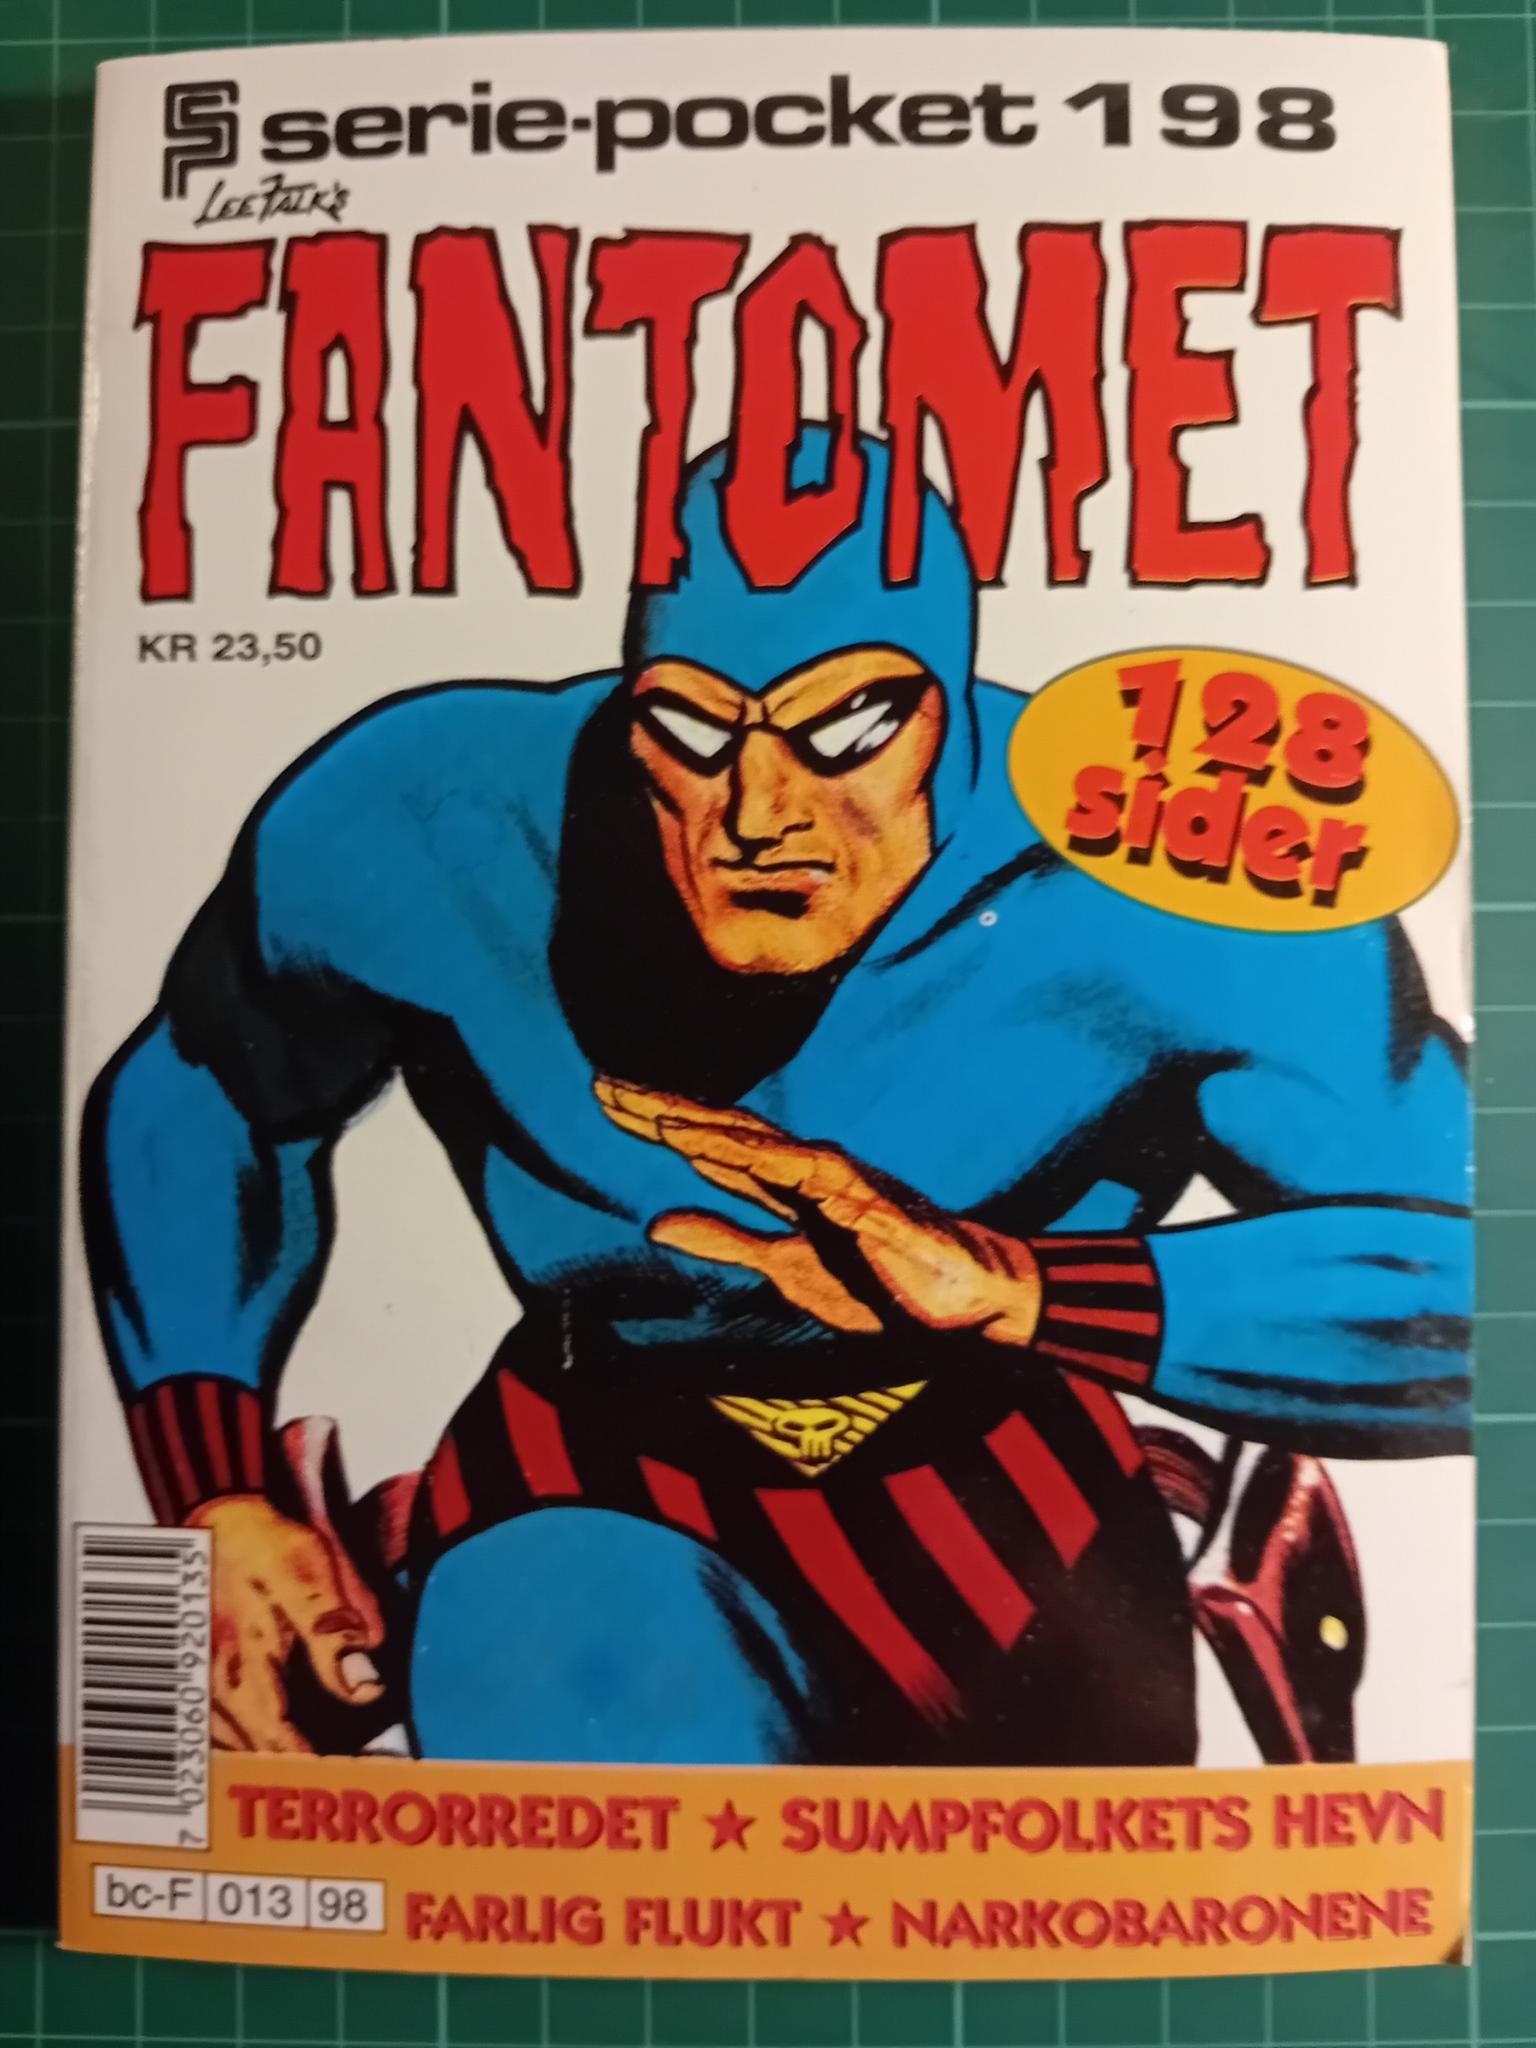 Serie-pocket 198 : Fantomet